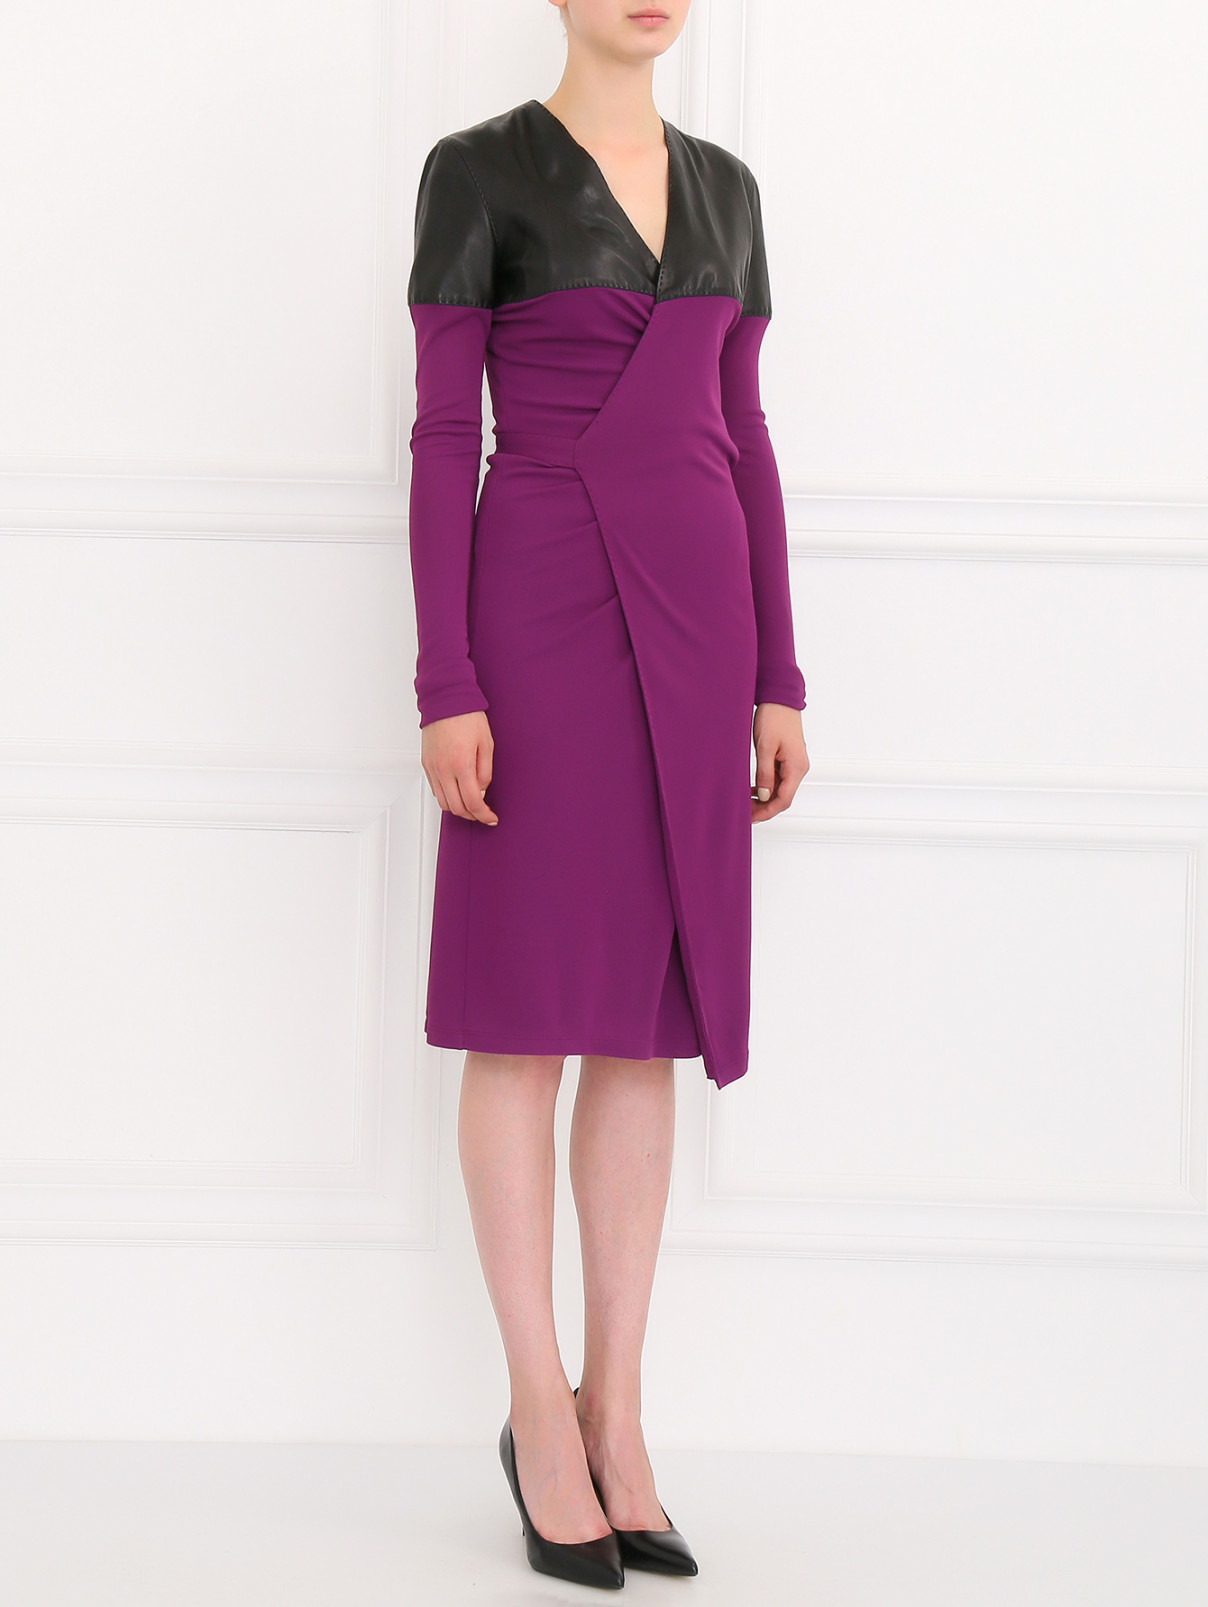 Платье с запахом и кожаными вставками Jean Paul Gaultier  –  Модель Общий вид  – Цвет:  Фиолетовый